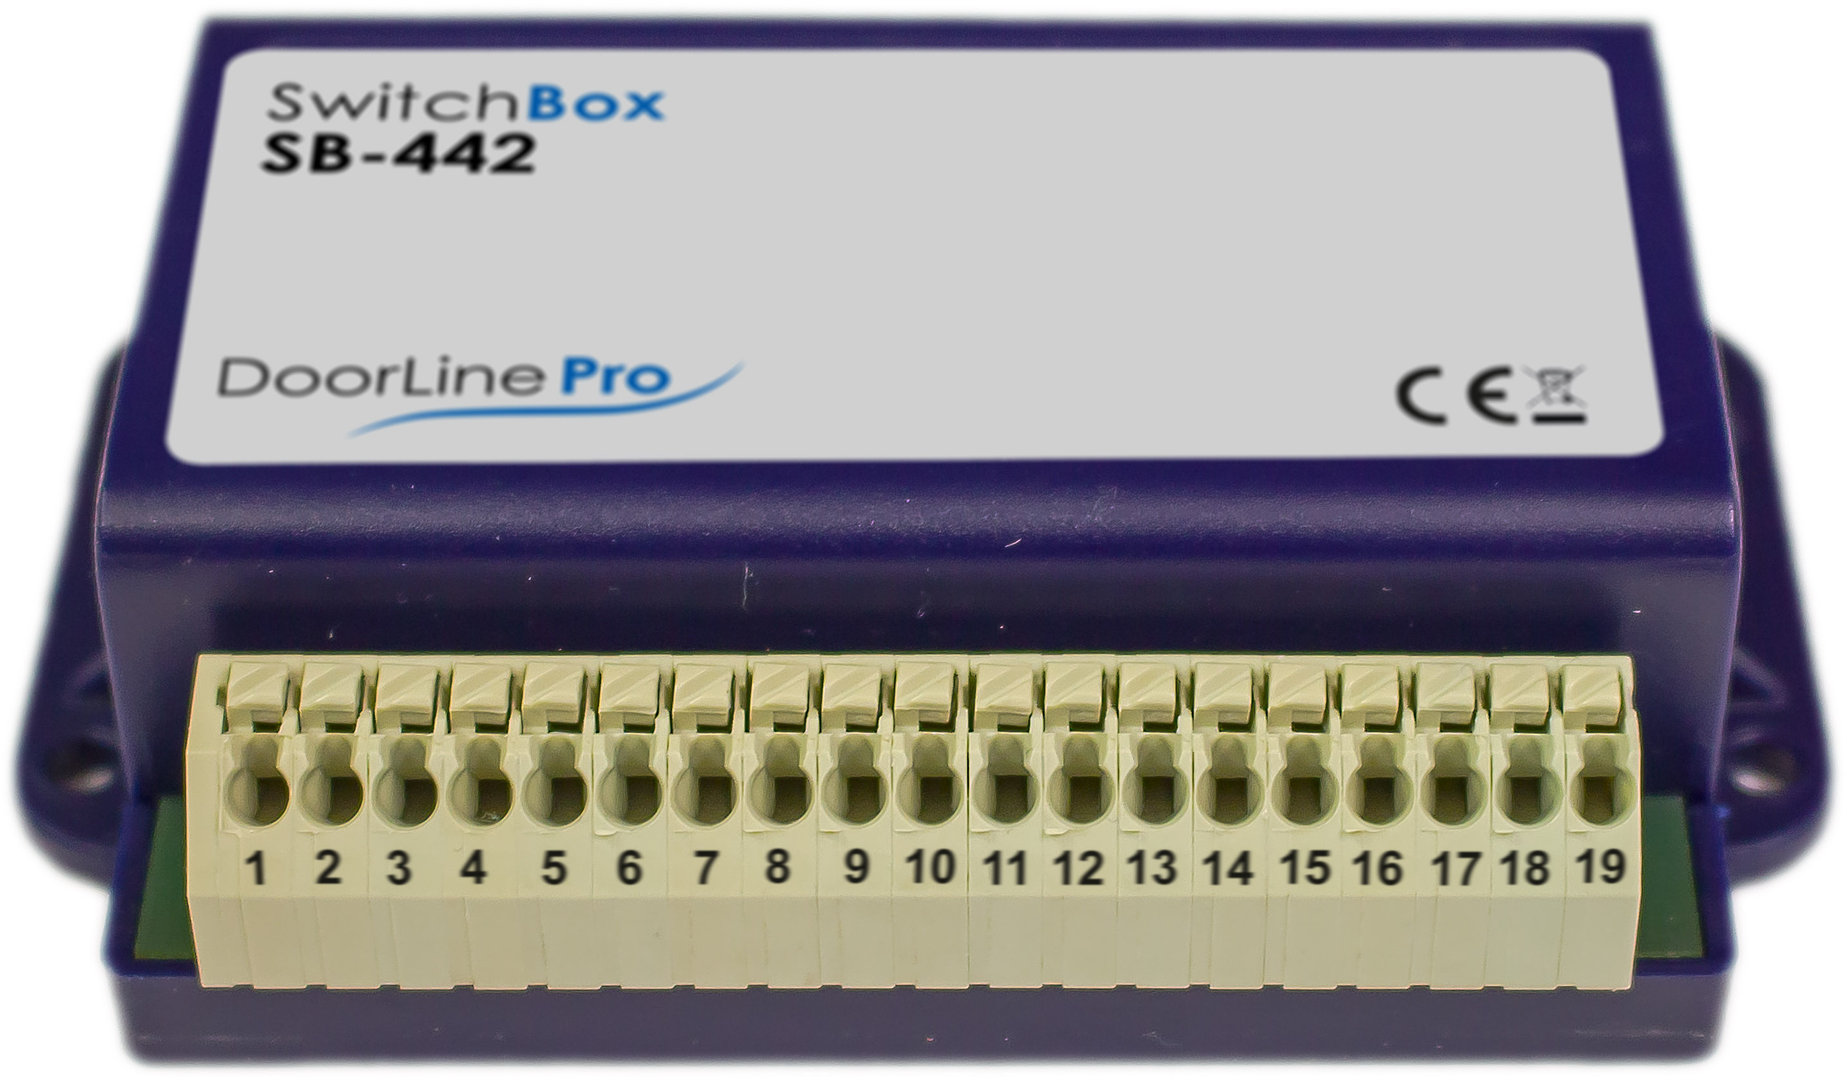 SwitchBox 442 |Zusatzmodul für DoorLine Pro Exclusive|Slim|Slim DECT|3 manipulationssichere Schaltkontakte|Anschlussmöglichkeit an bis zu 4 Router